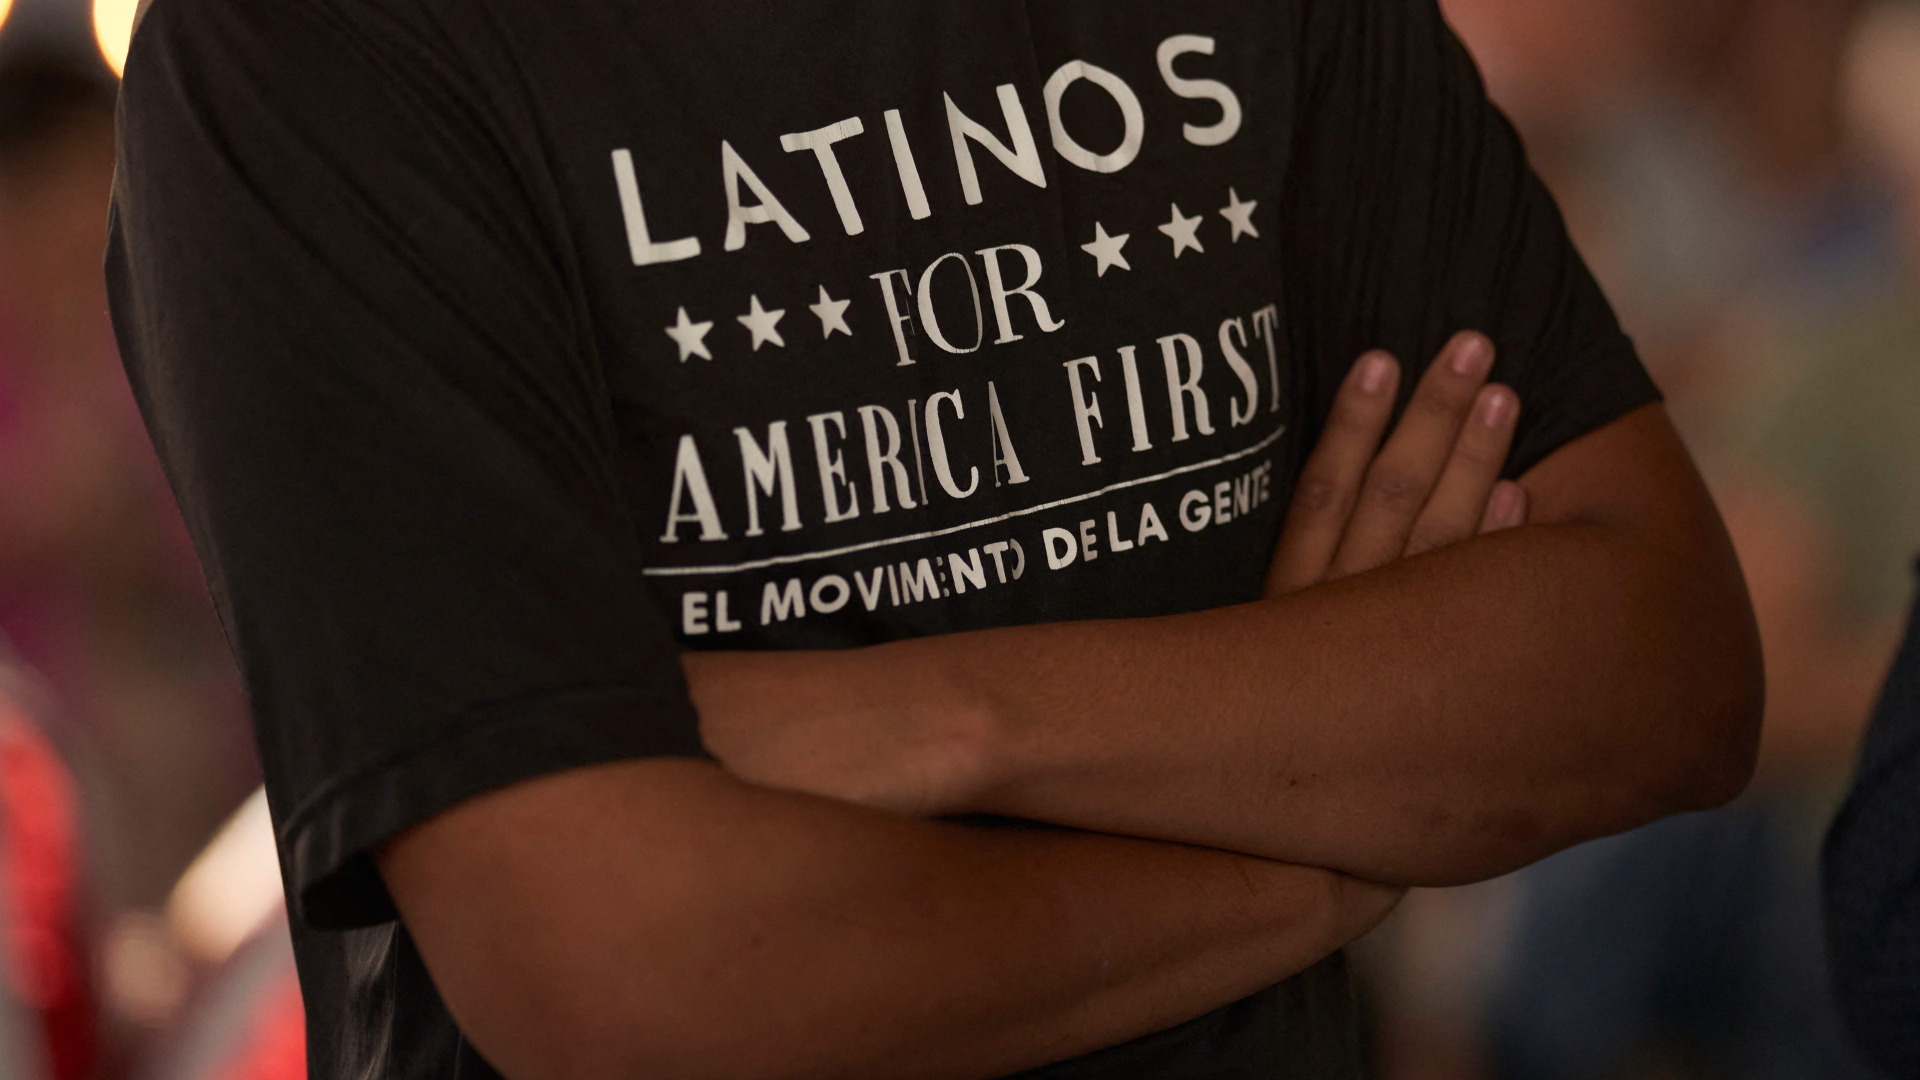 Ein Mann auf einer republikanischen Wahlveranstaltung in Texas (USA) trägt ein T-Shirt mit dem Aufdruck "Latinos for America First" 